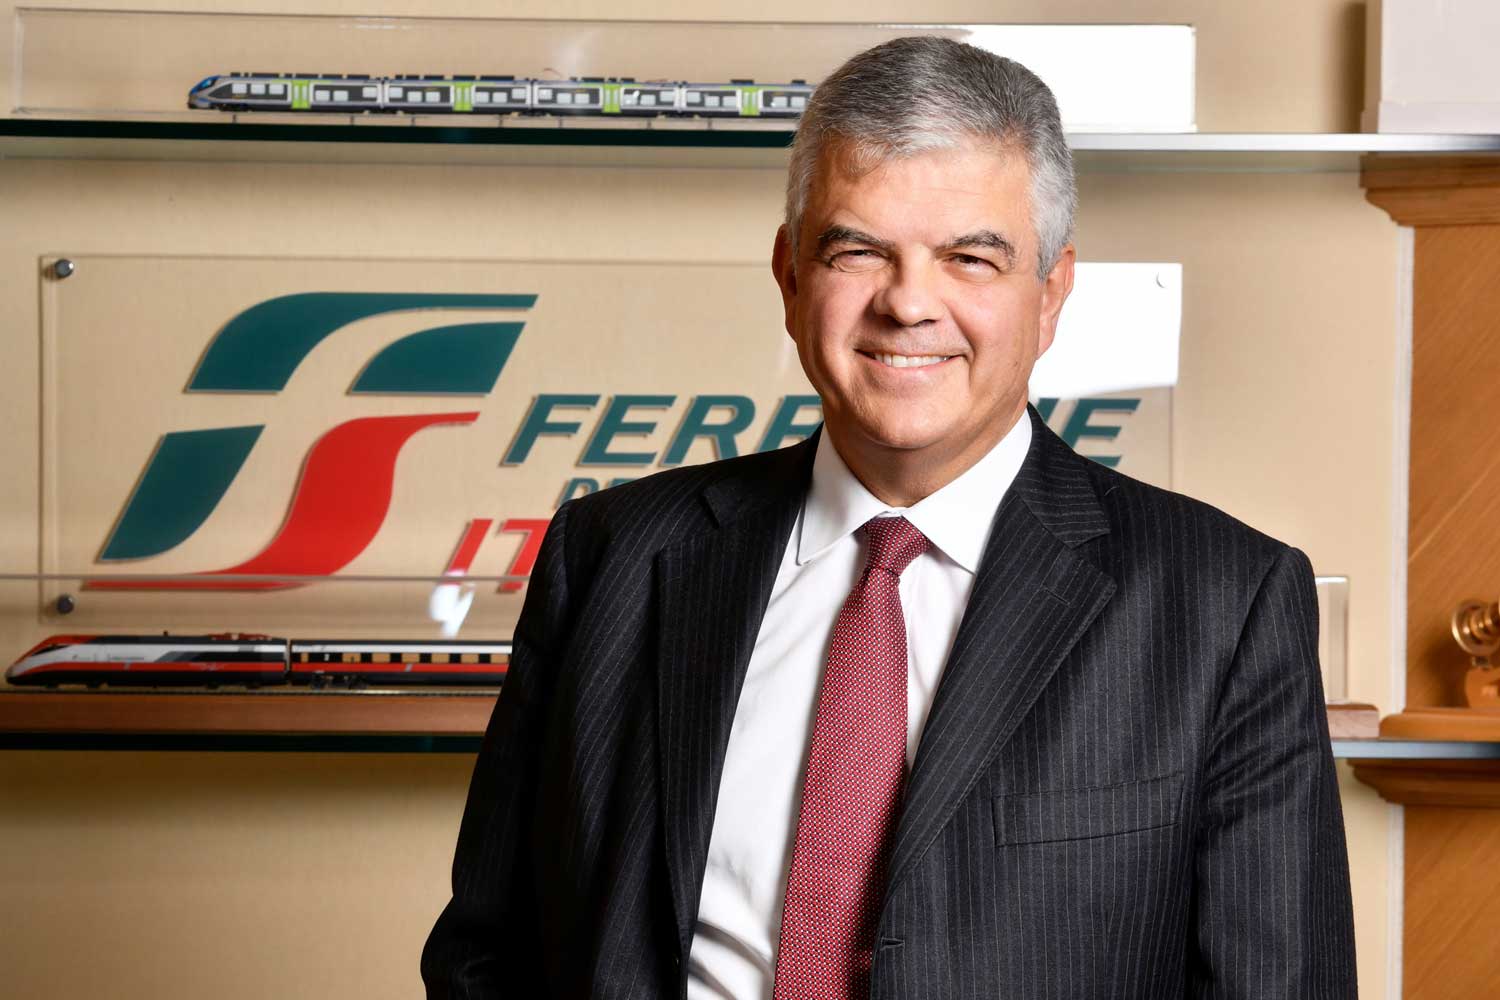 Luigi Ferraris, AD del Gruppo FS